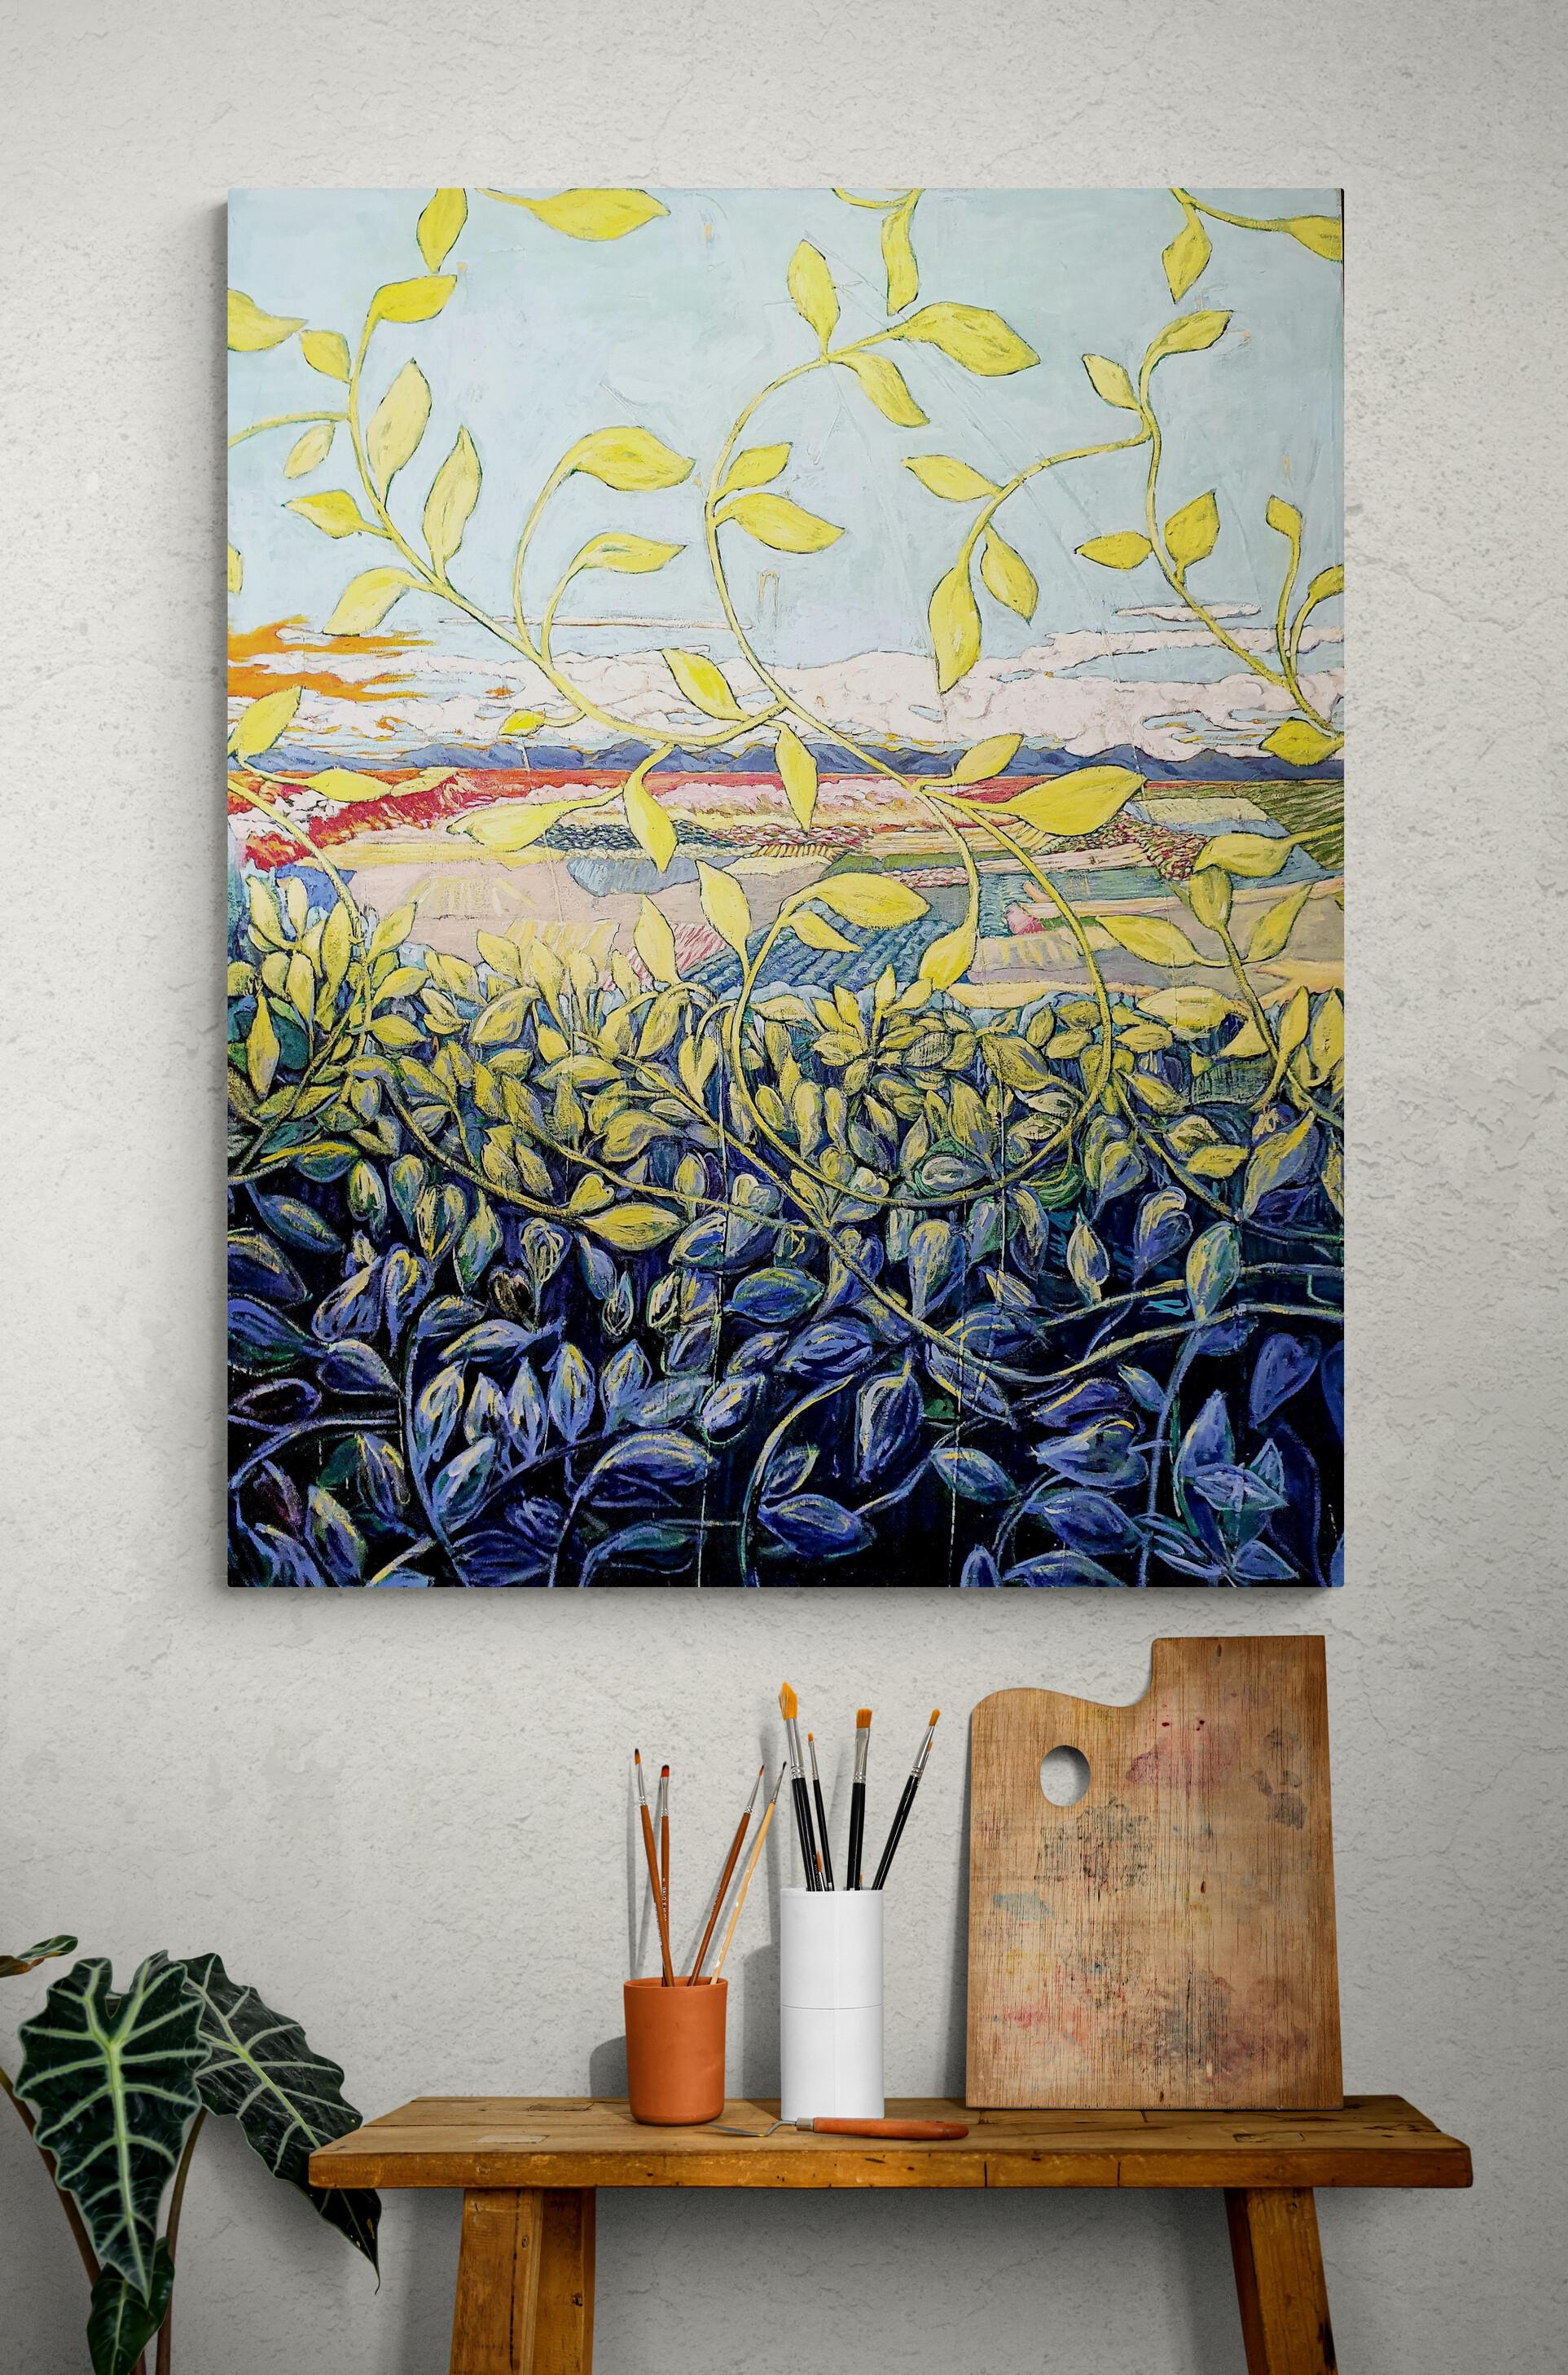 Peinture de paysage exotique colorée « Through the Grapevine » (A travers la vigne) en vente 1